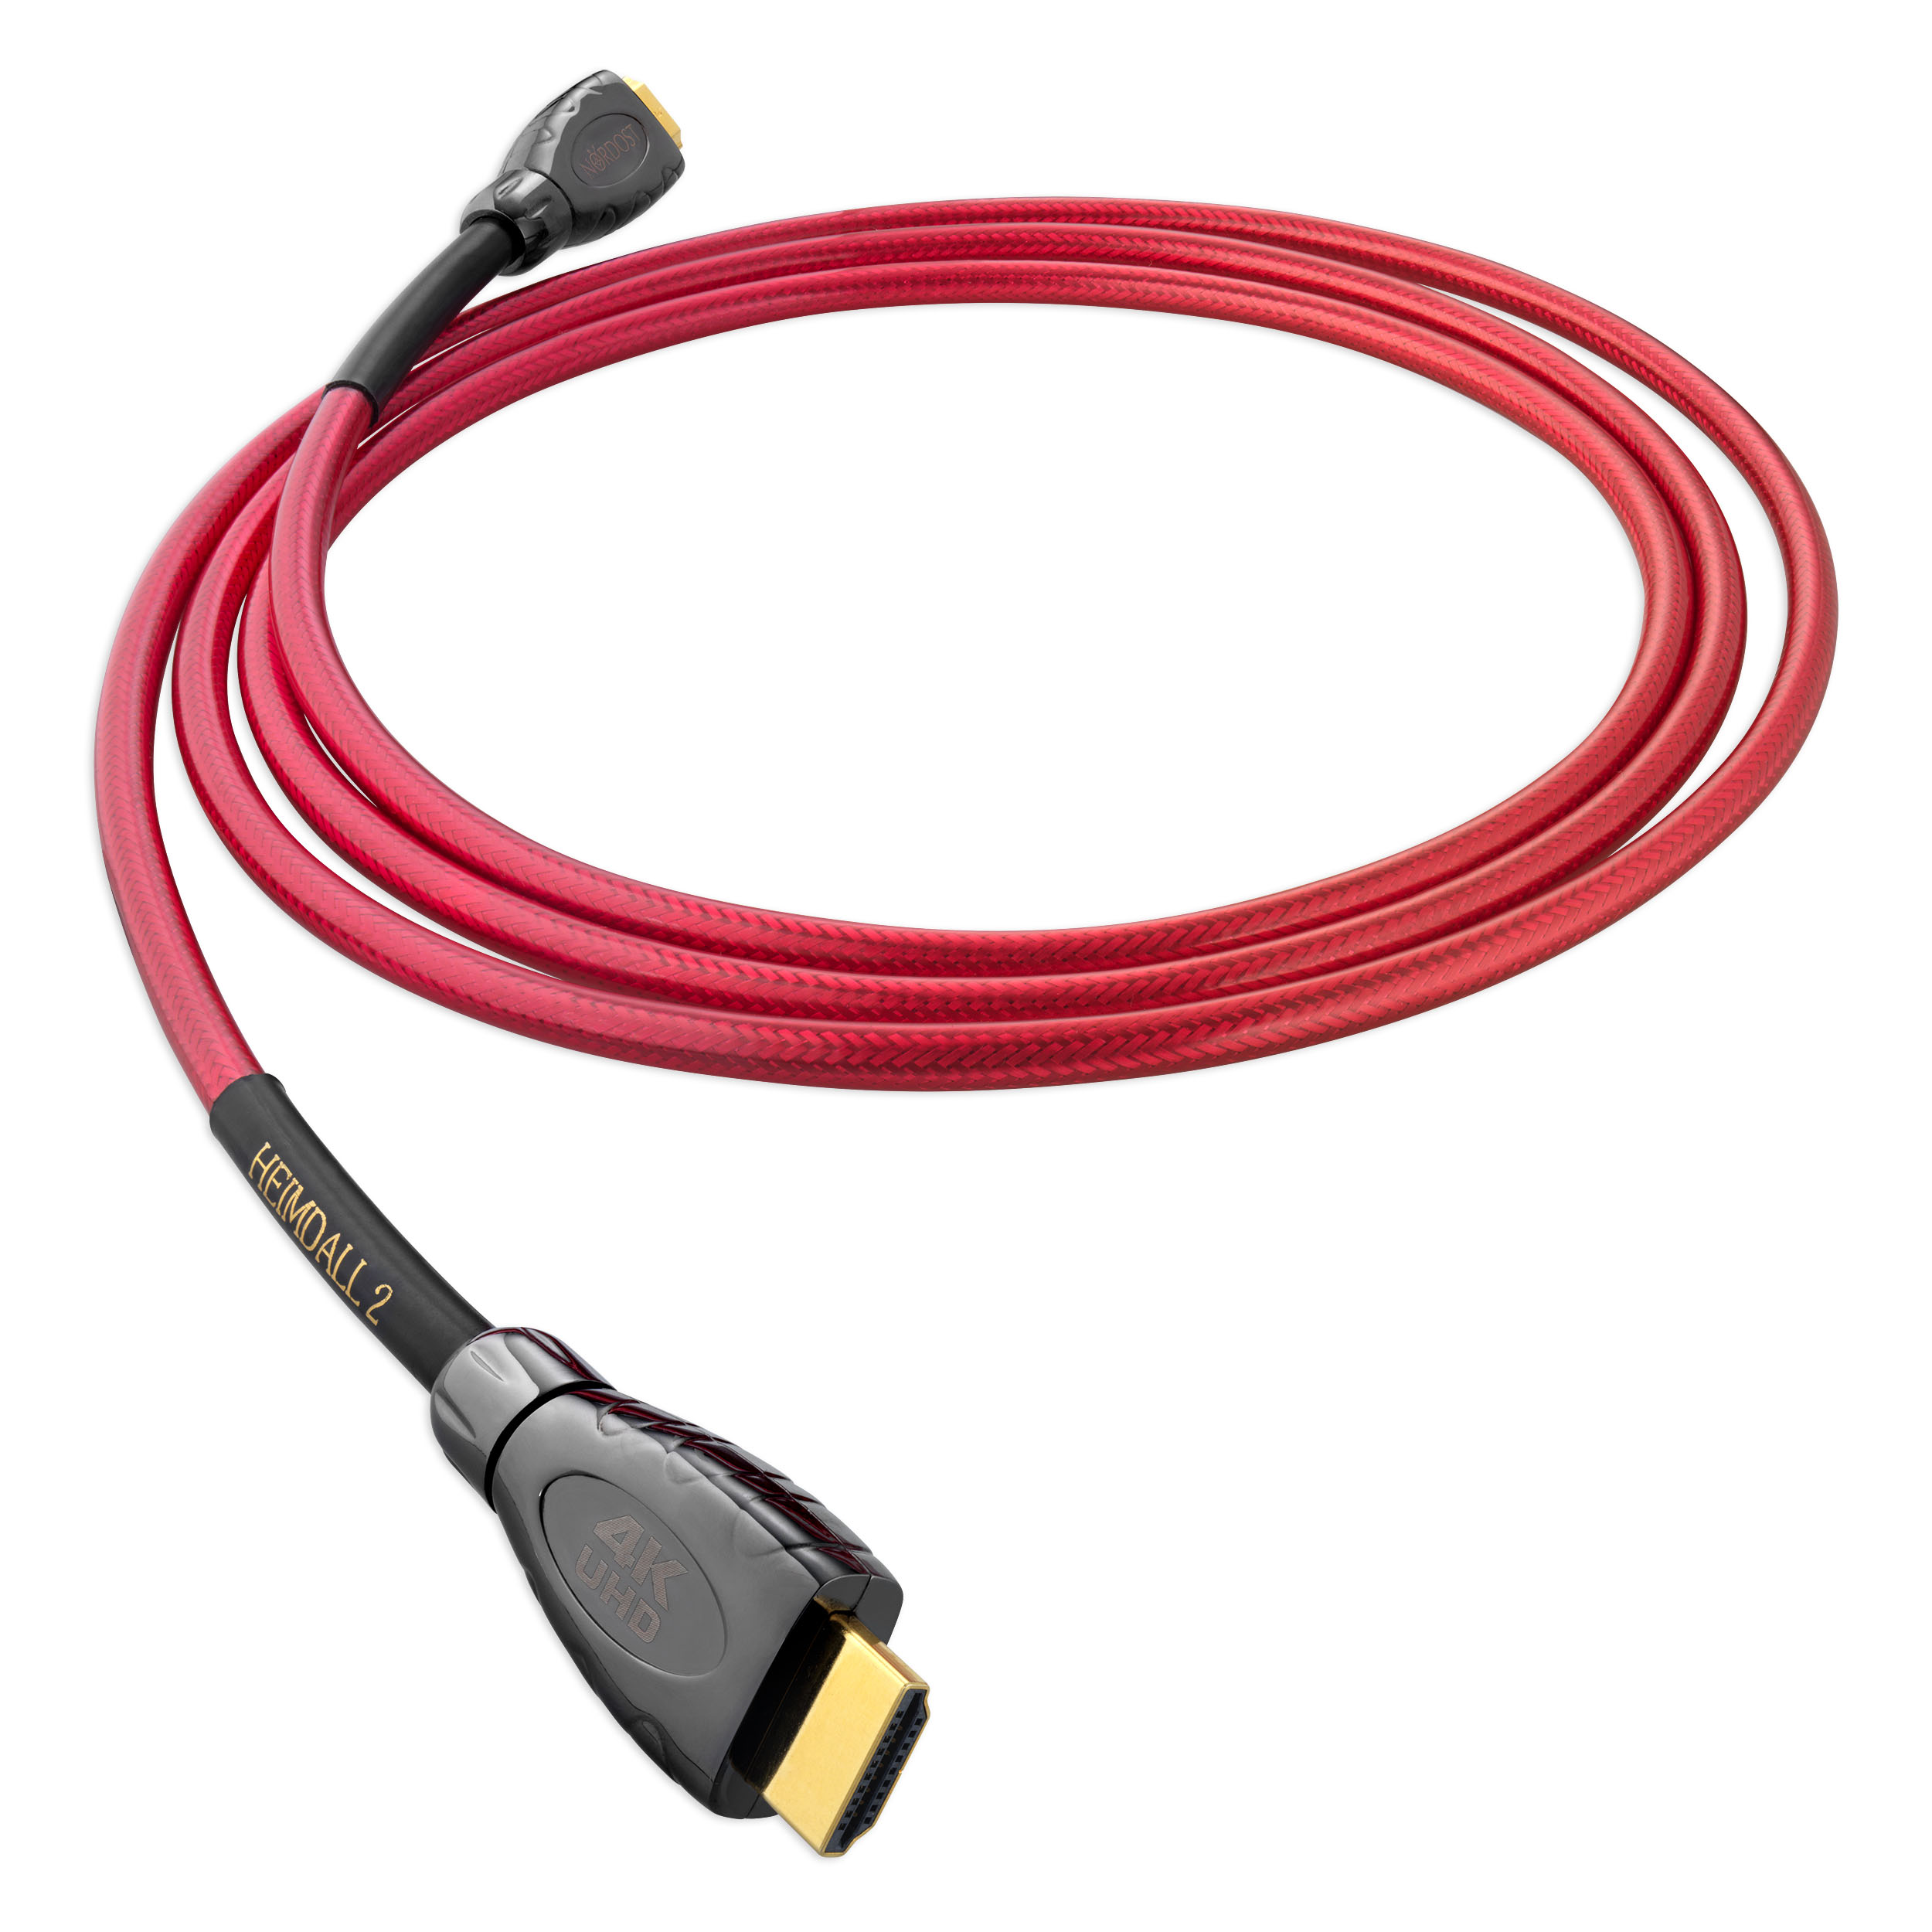 Heimdall 2 4K UHD Cable